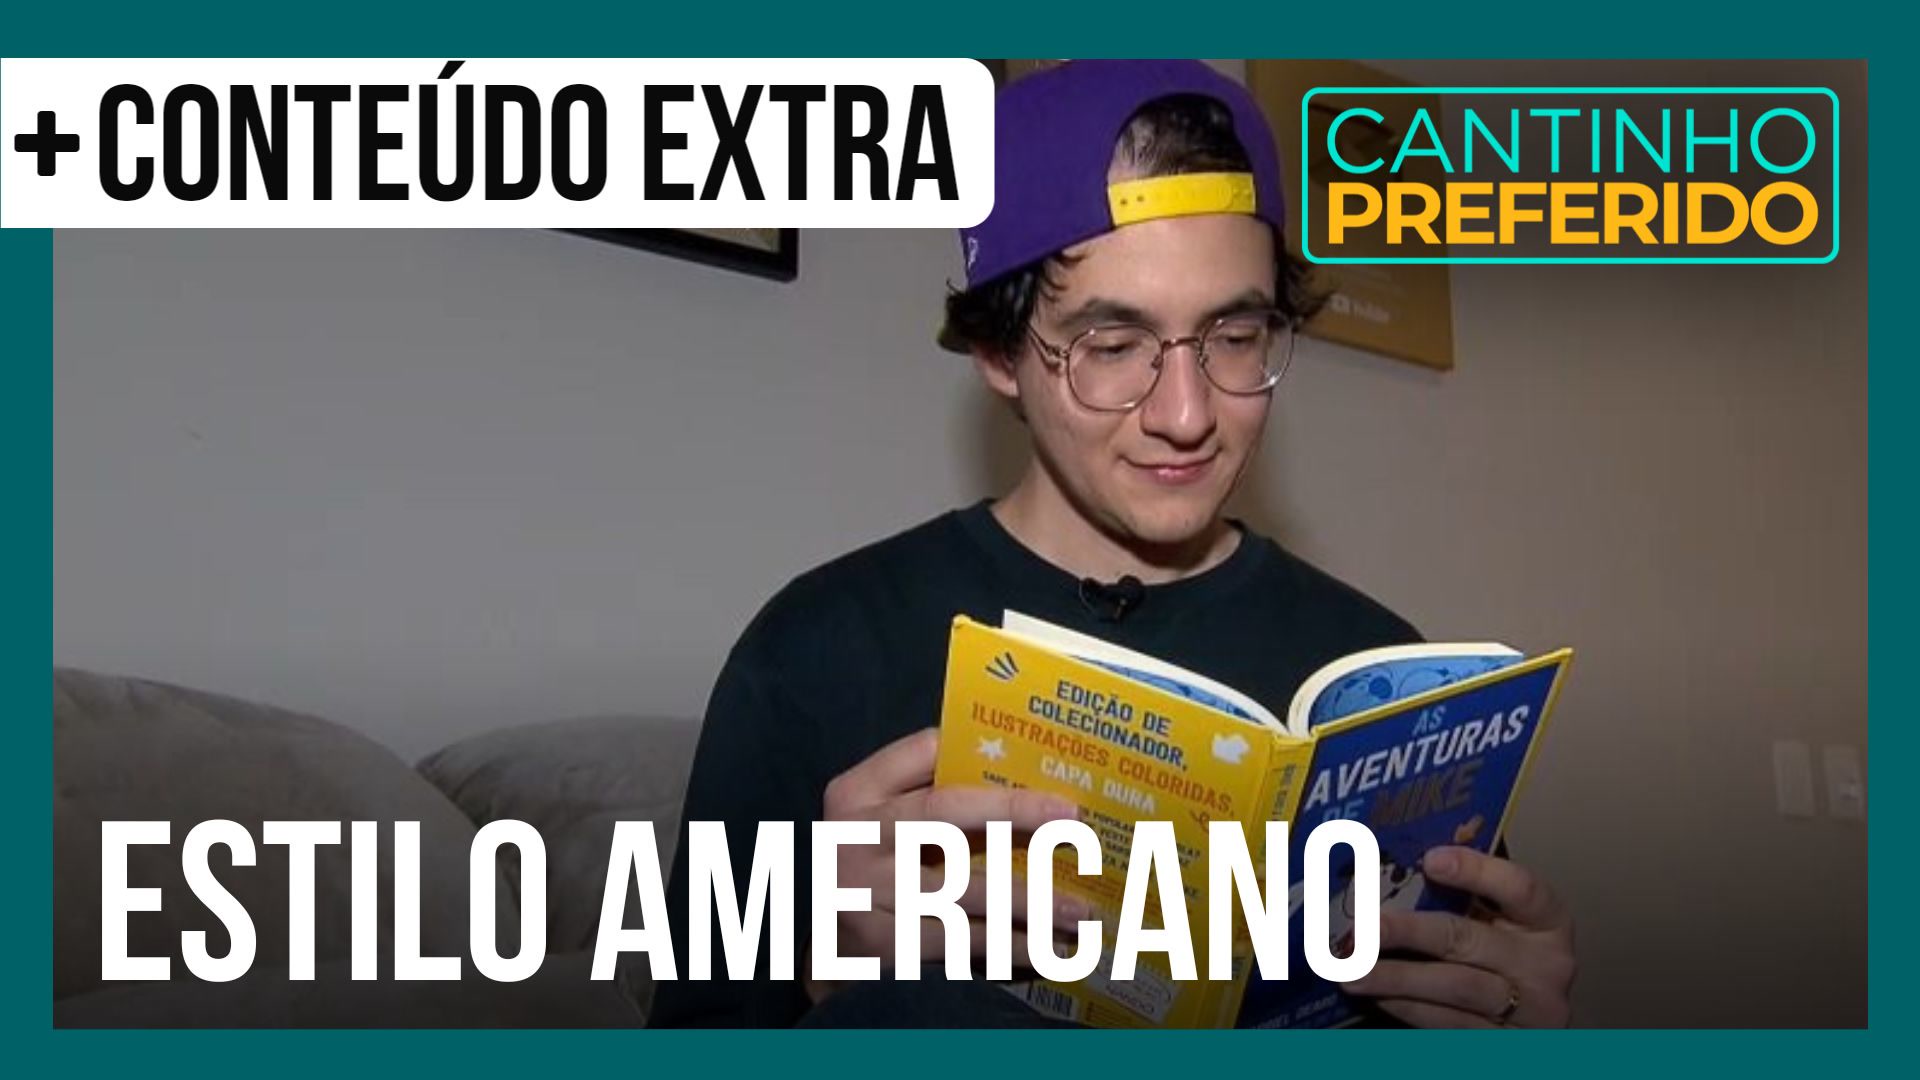 Vídeo: Escritor e youtuber Gabriel Dearo mostra sua casa com estilo americano | Cantinho Preferido